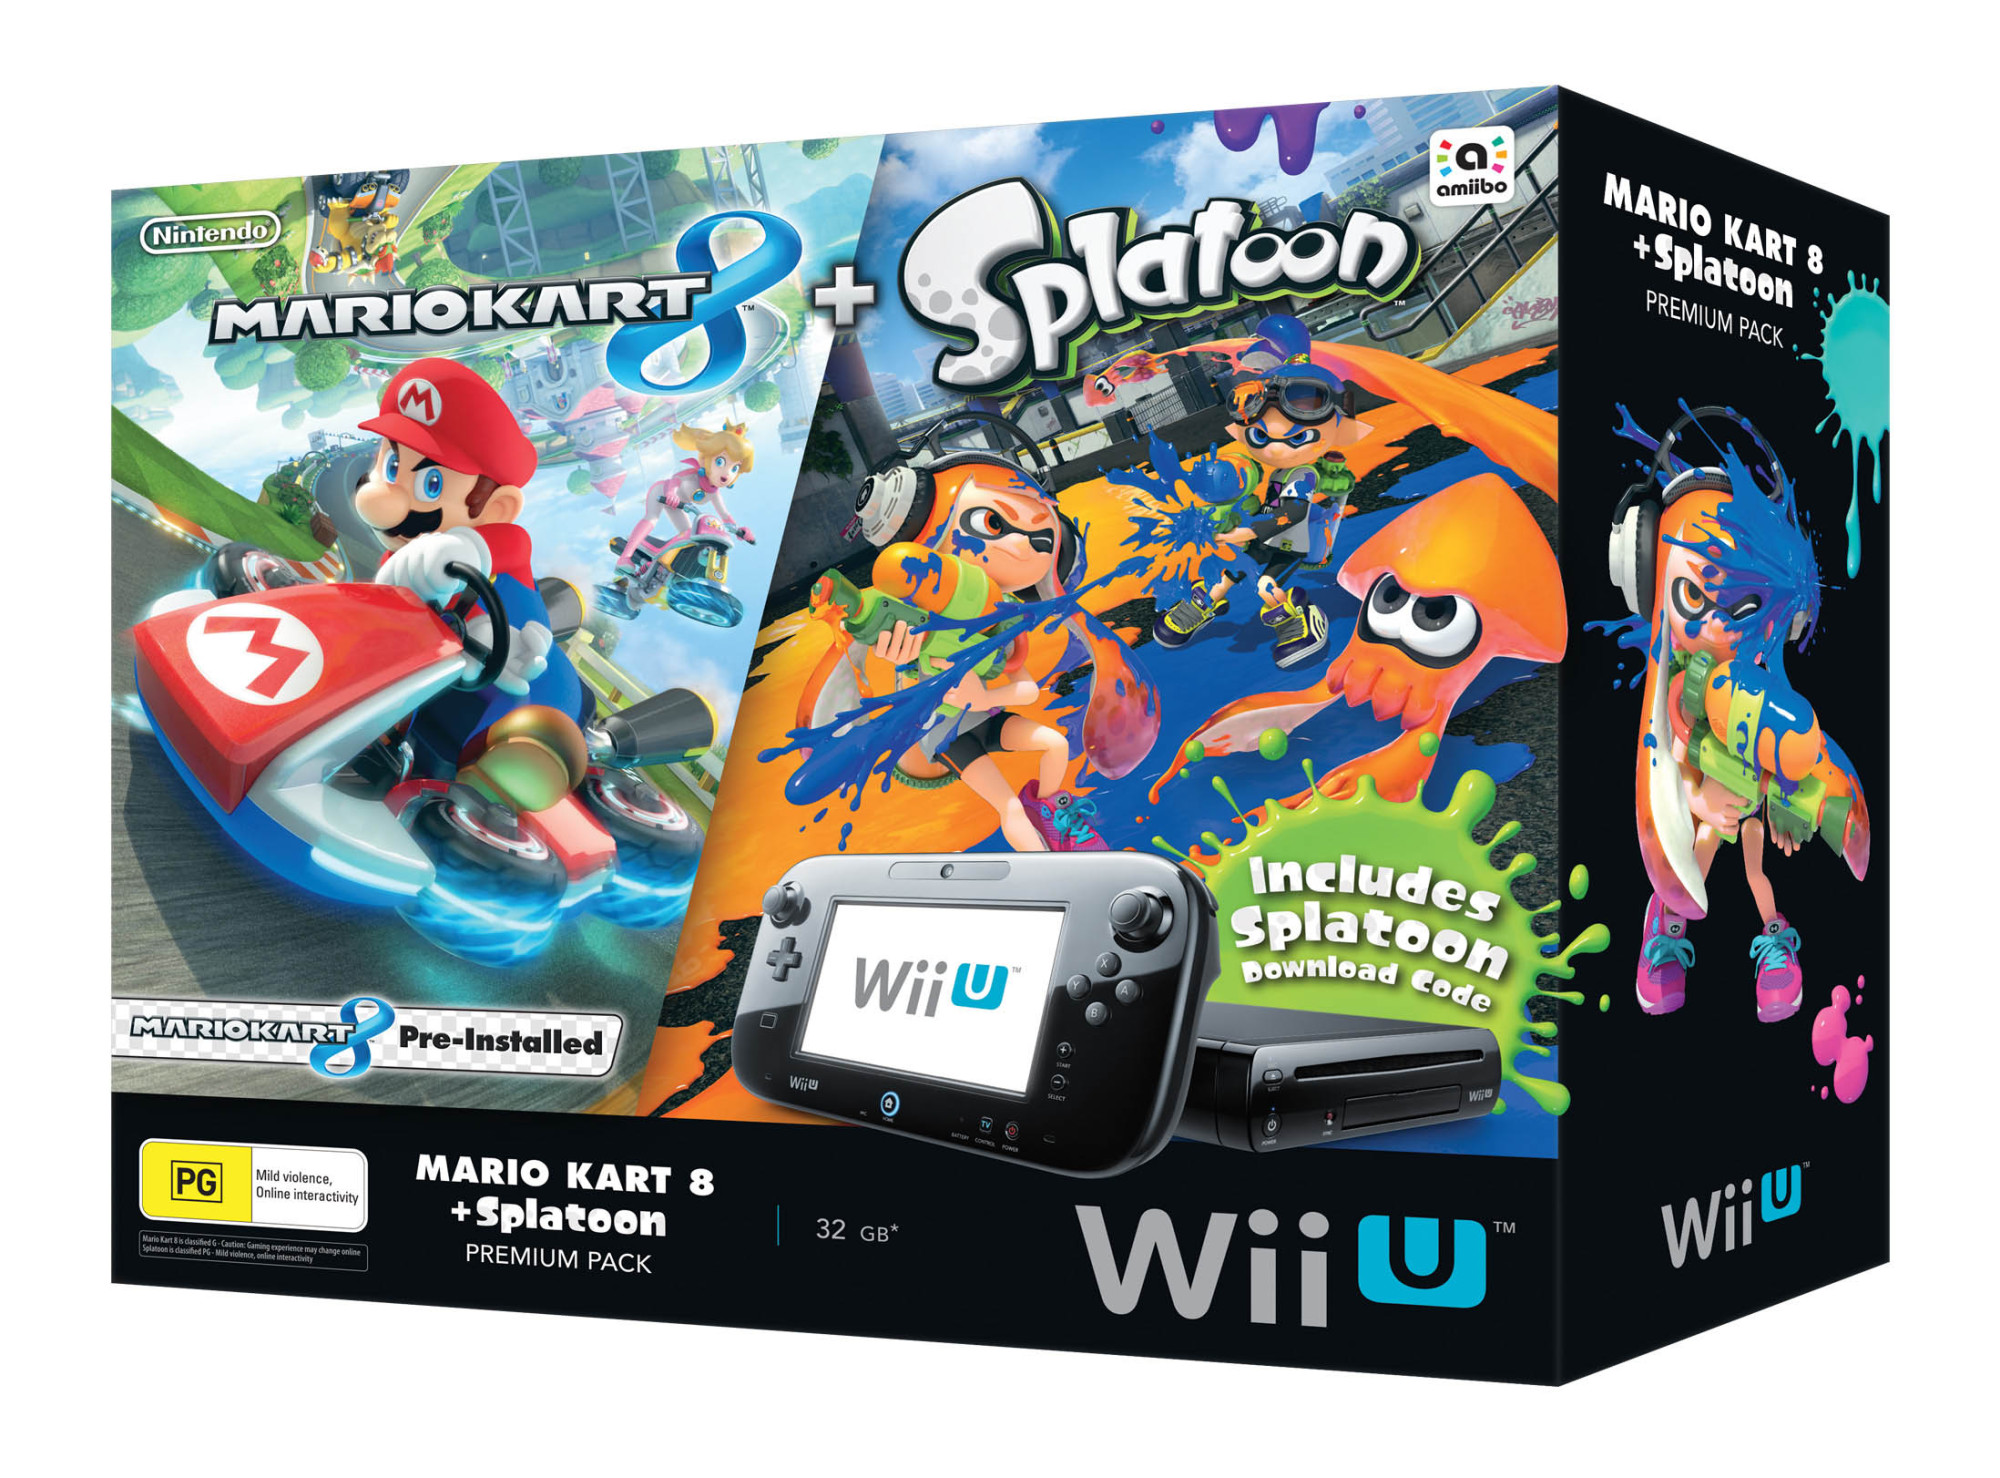 Mario Kart 8 Splatoon Wii U Premium Pack Vooks 6158